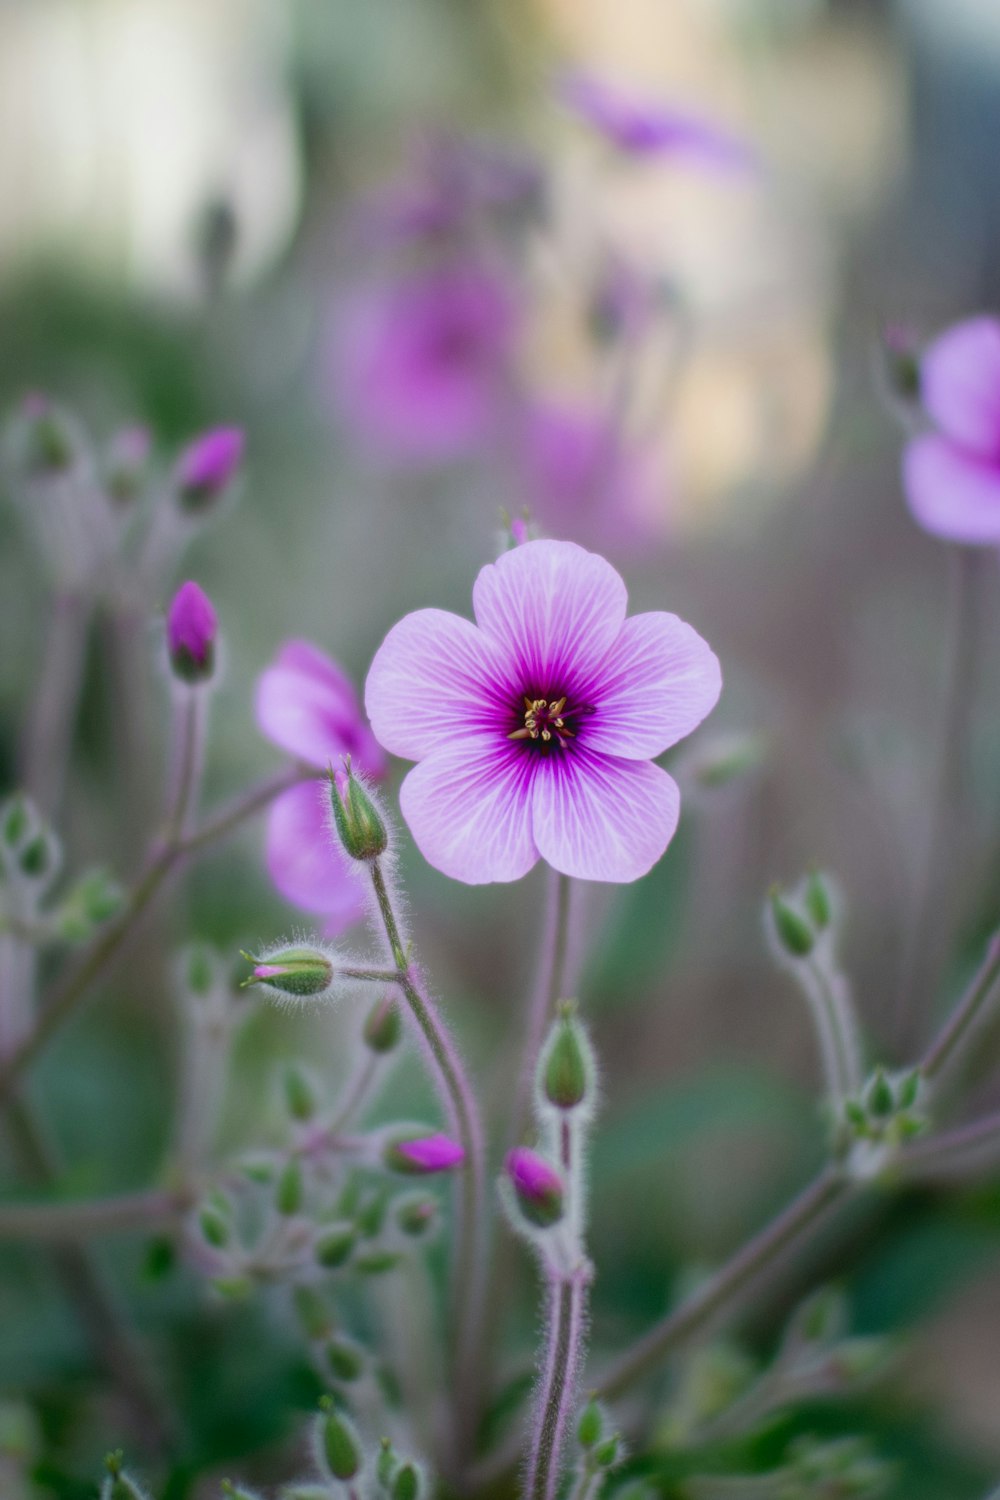 fleur violette dans une lentille à bascule